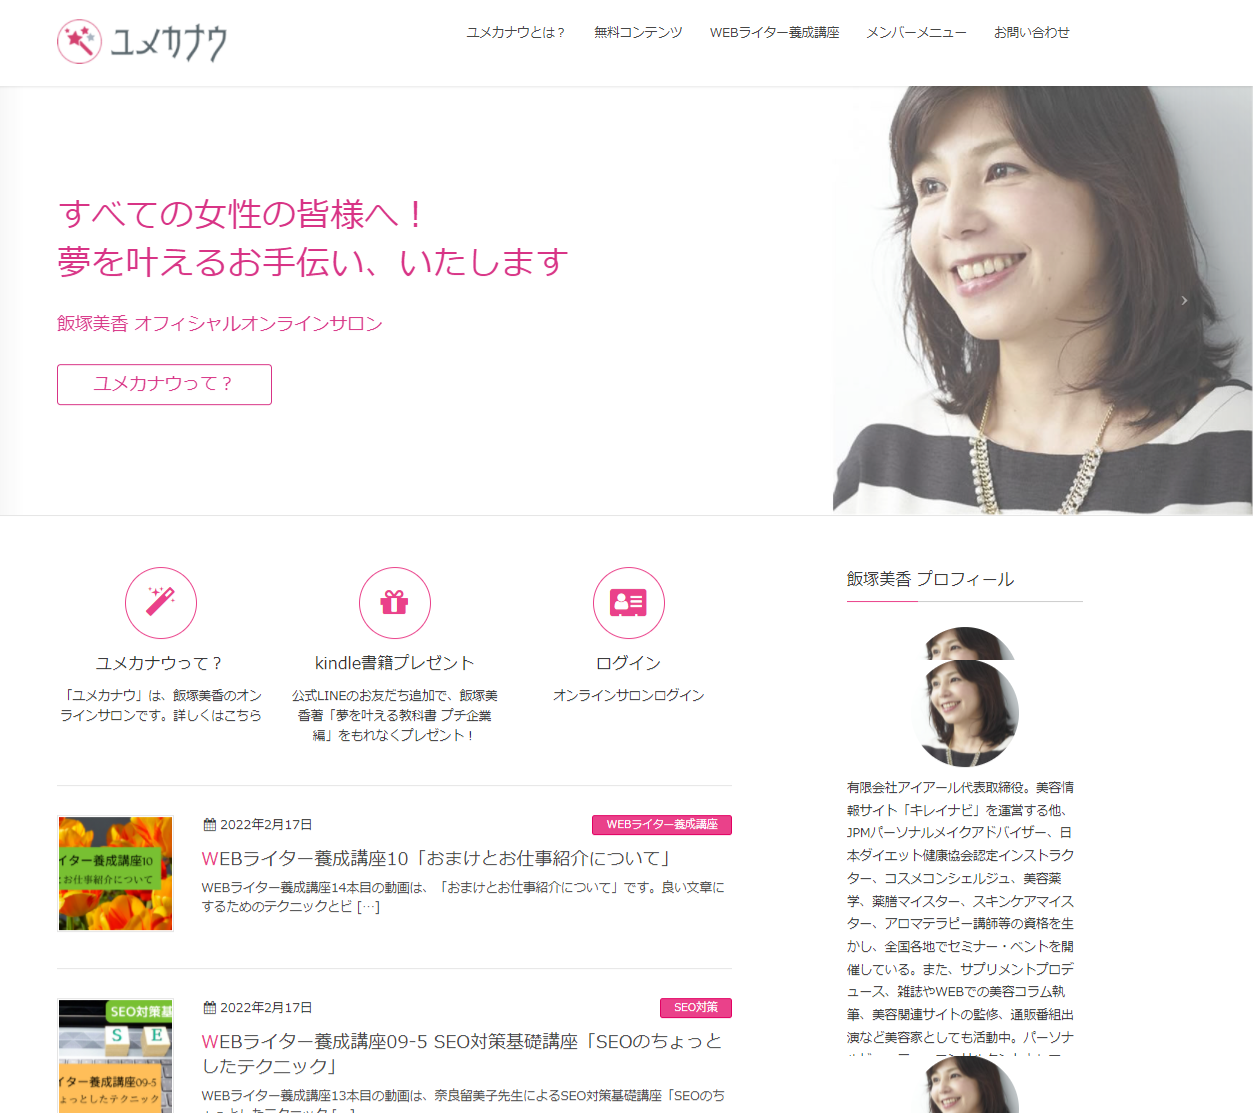 飯塚美香のオンラインサロン「ユメカナウ」